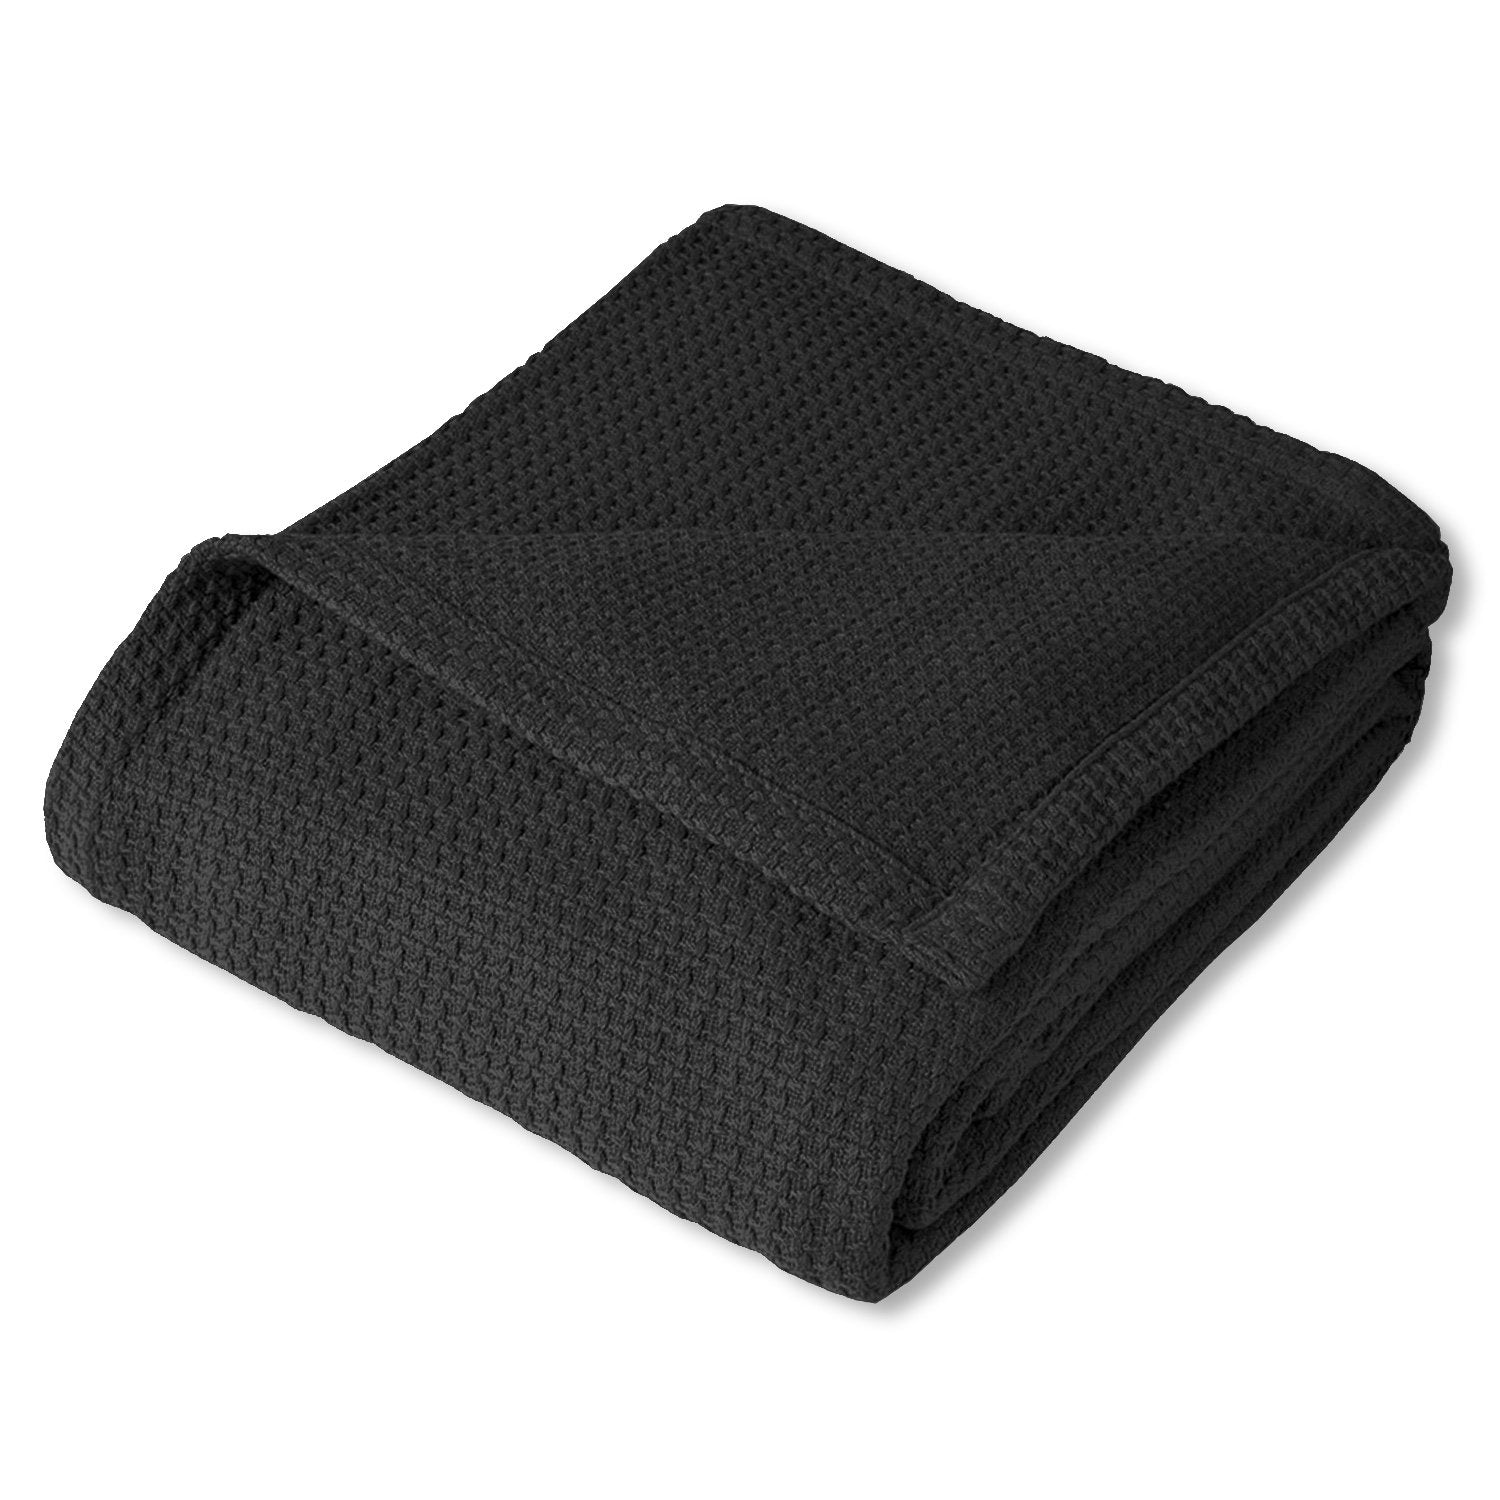 Basket Weave Cotton Blanket Black - Folded